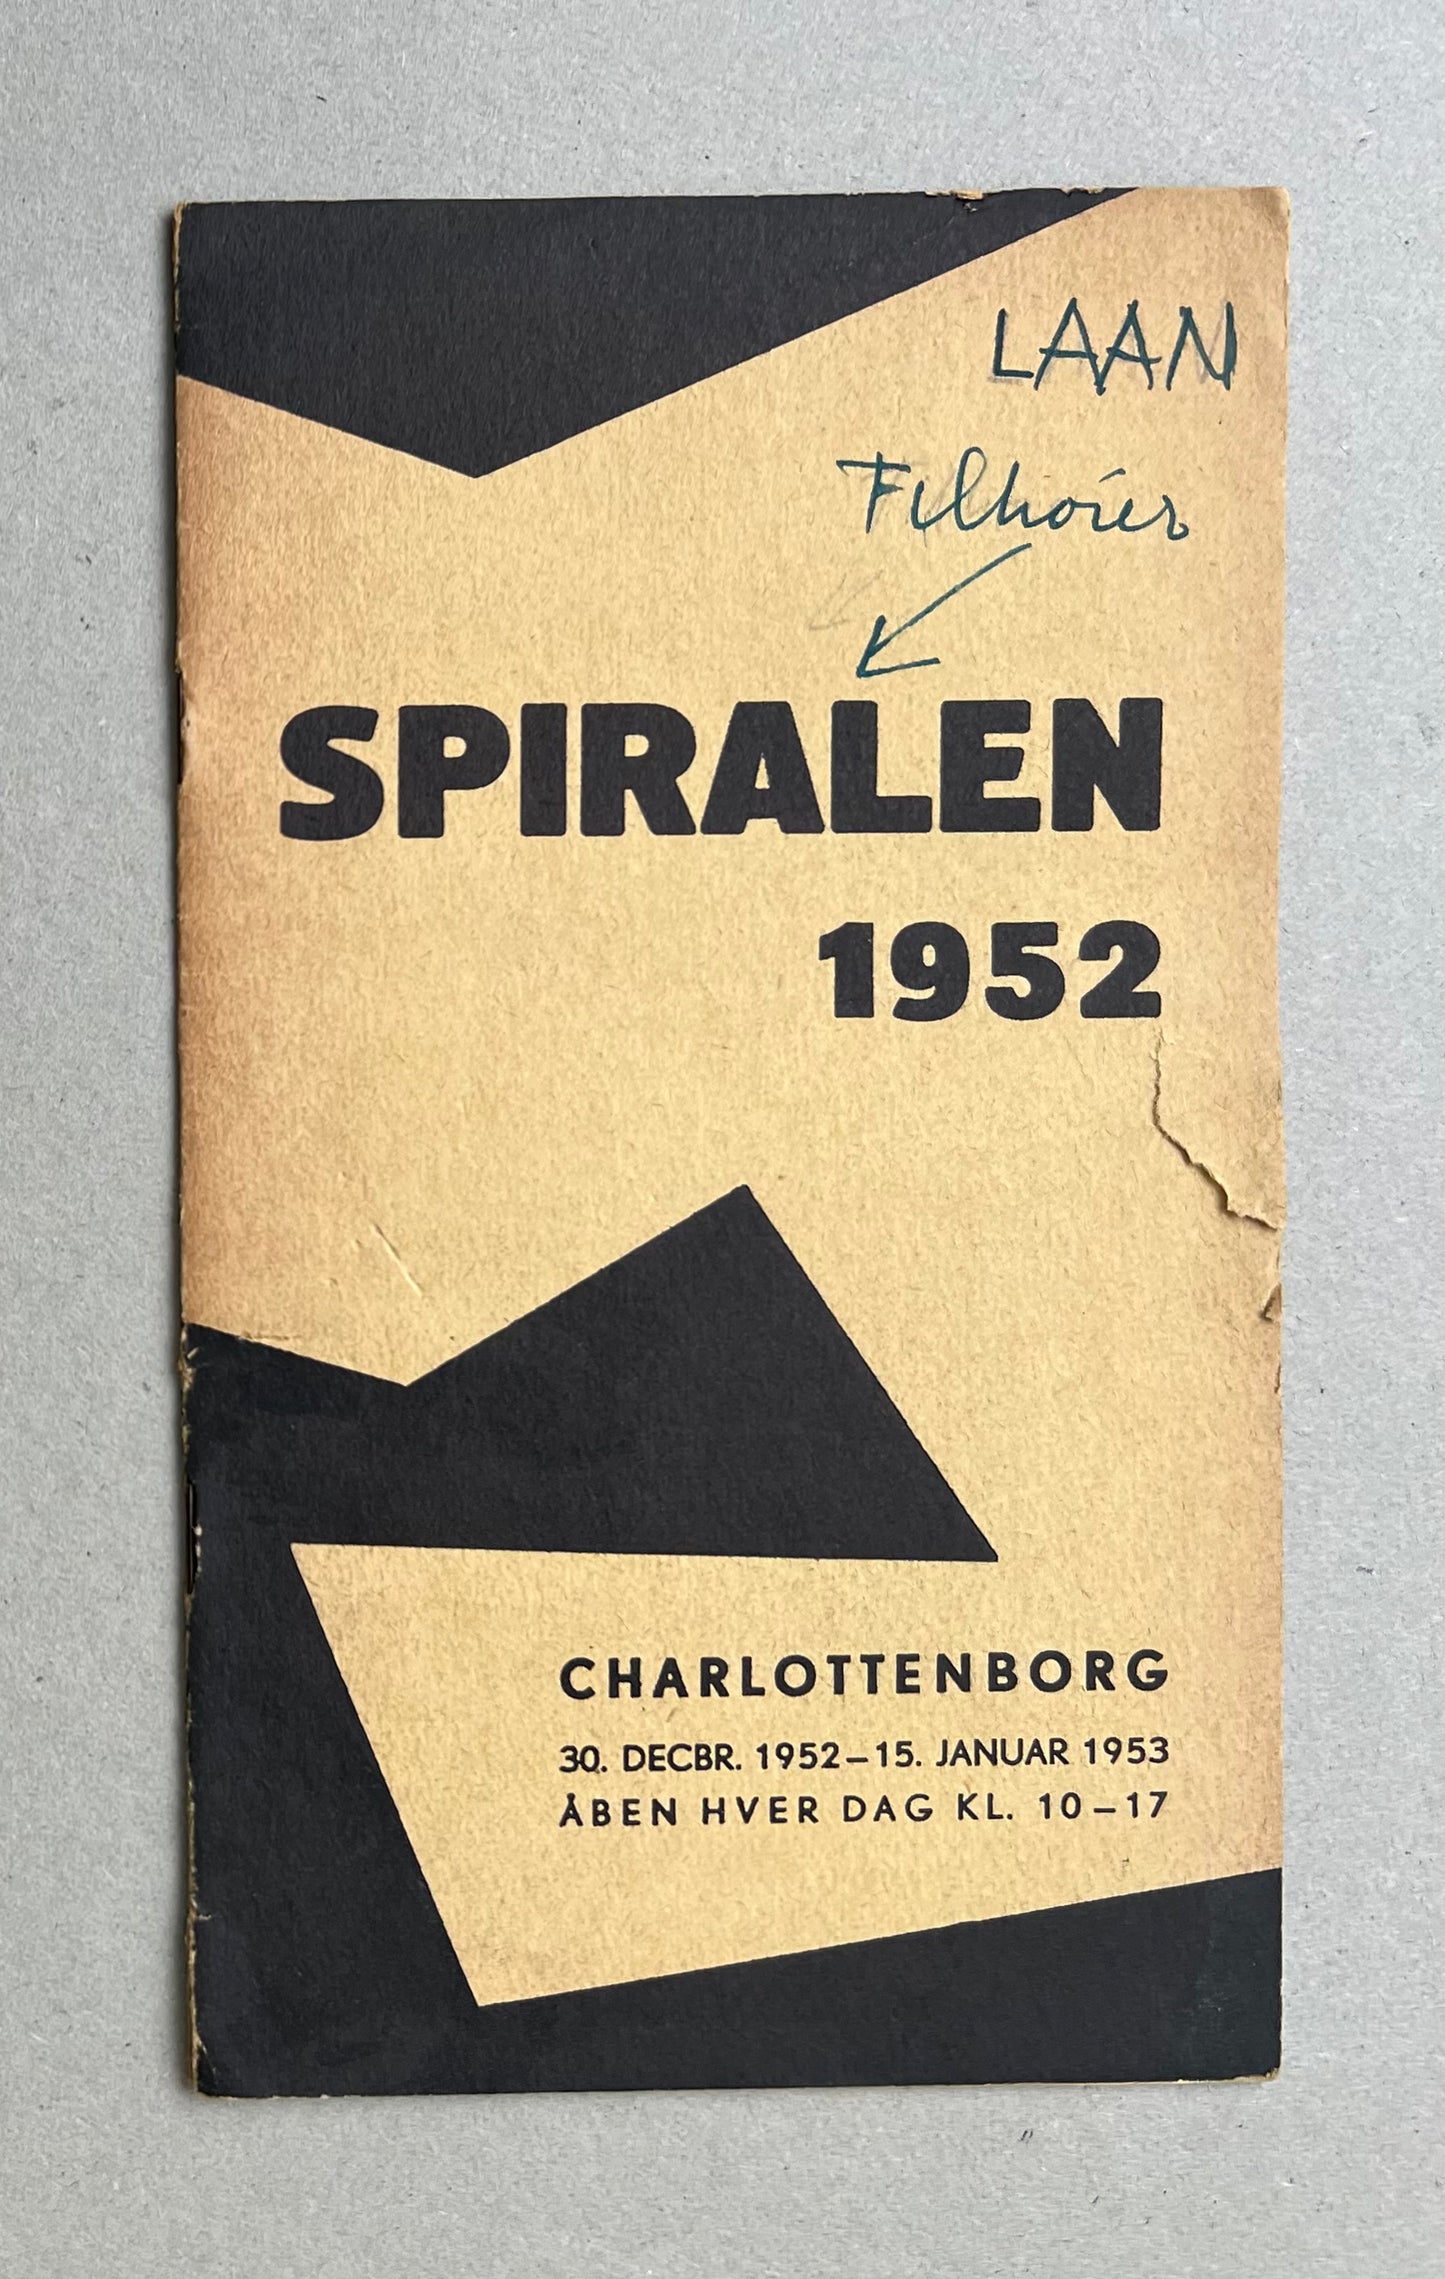 “Spiralen, Mappe no 3”, 1978